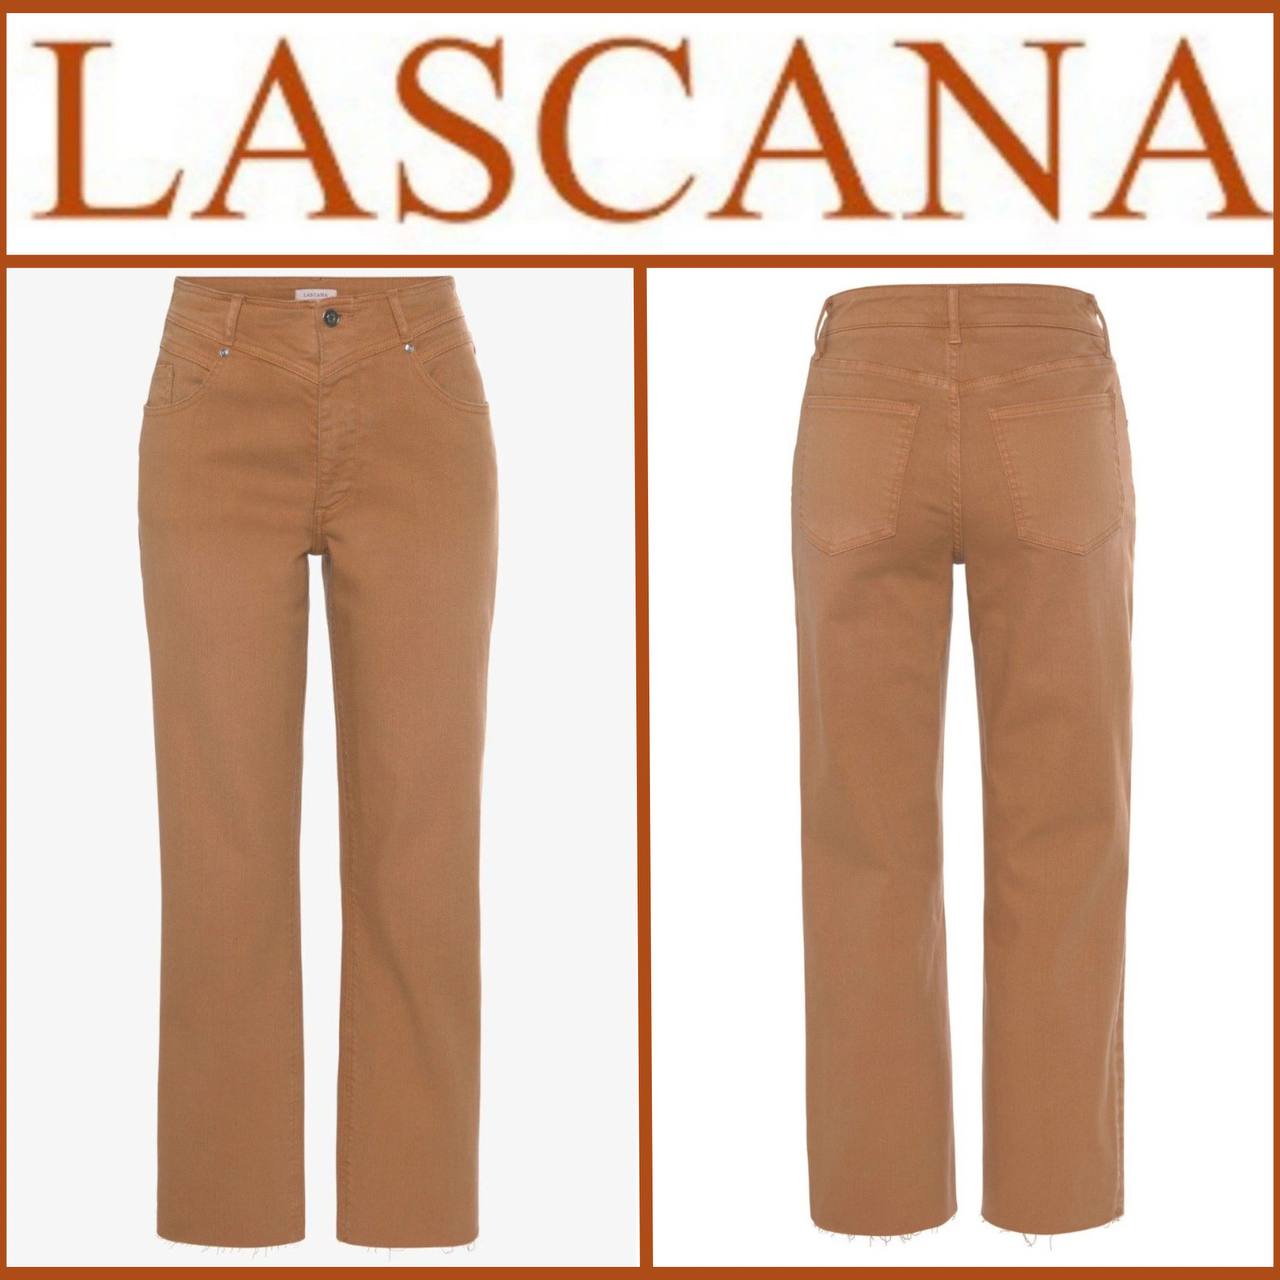 Women's terracotta jeans from Lascana